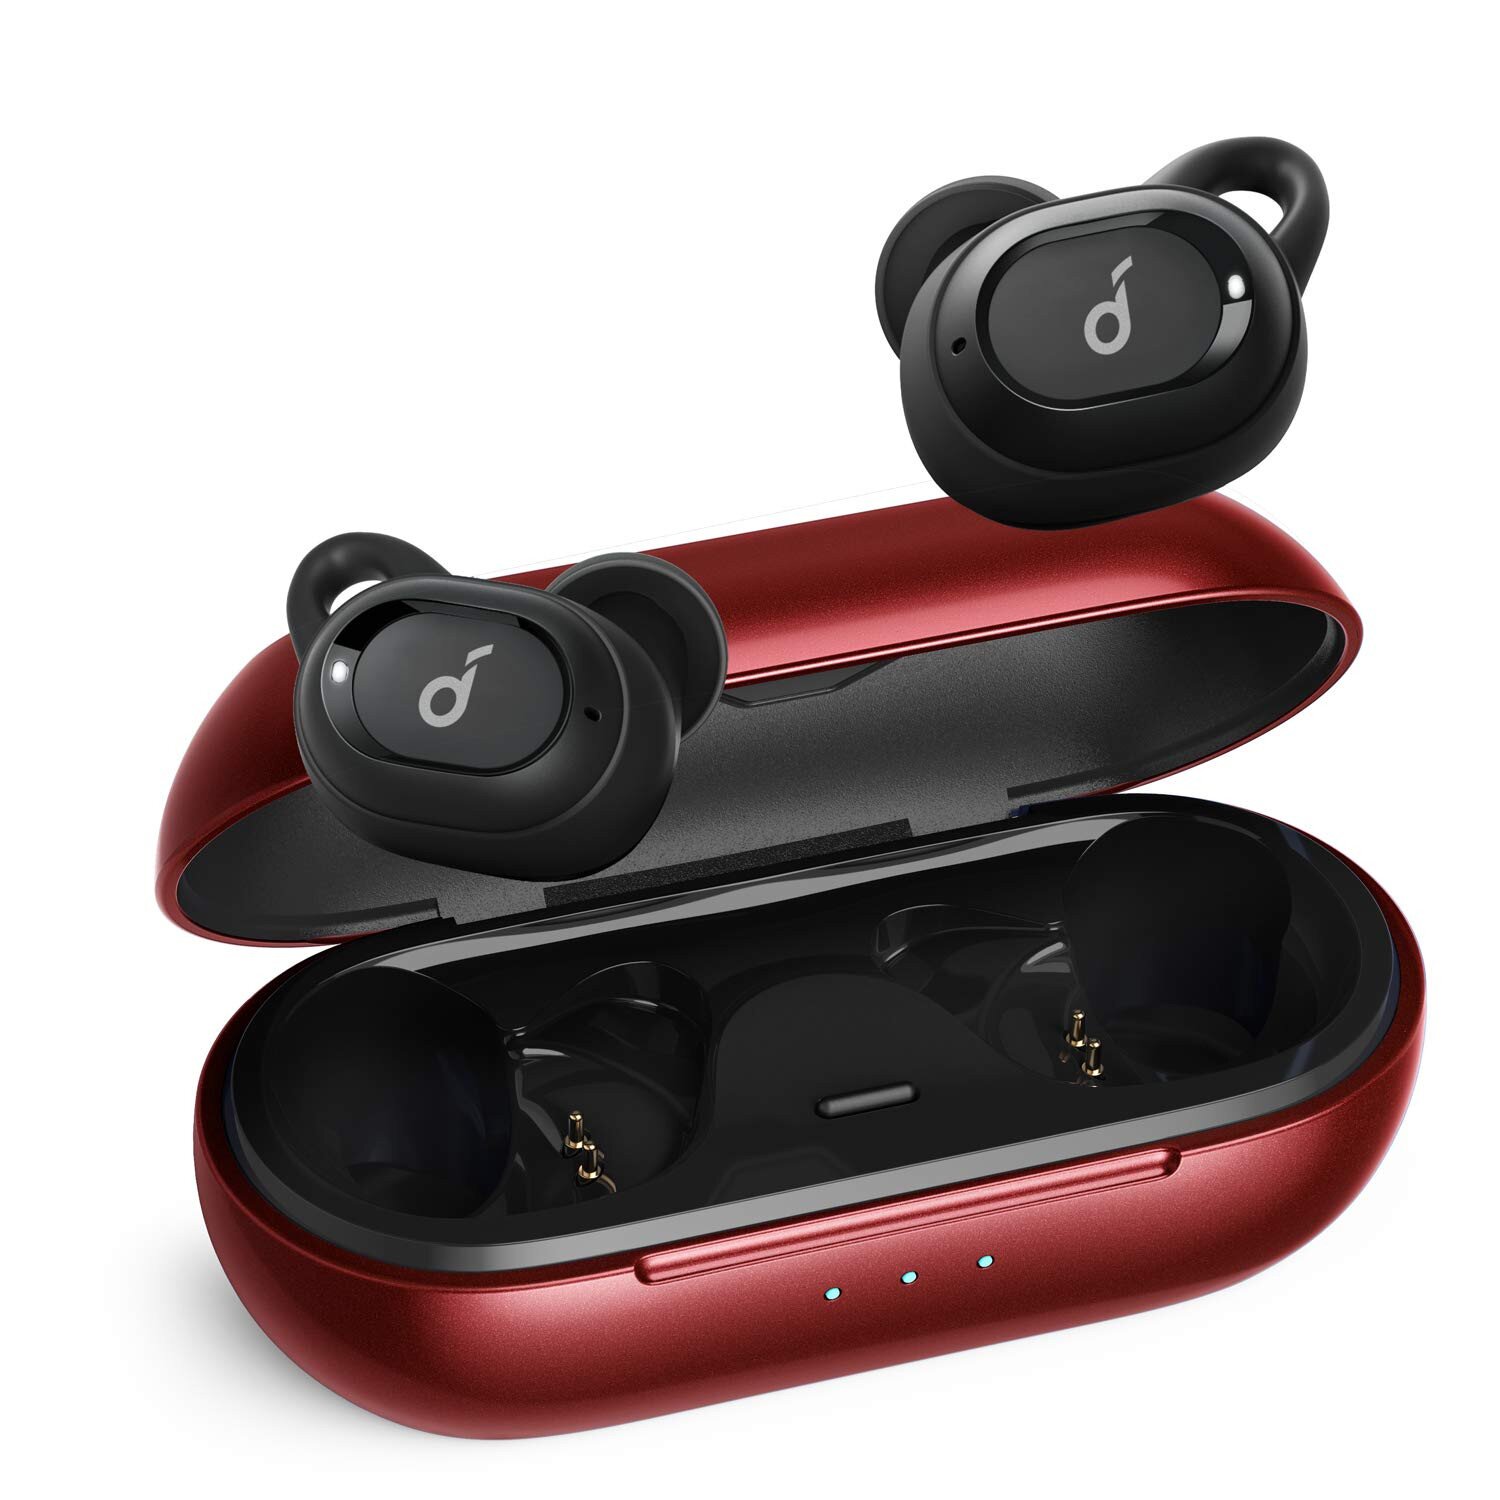 Buy True Wireless Earbuds (2019) - Red online Worldwide Tejar.com